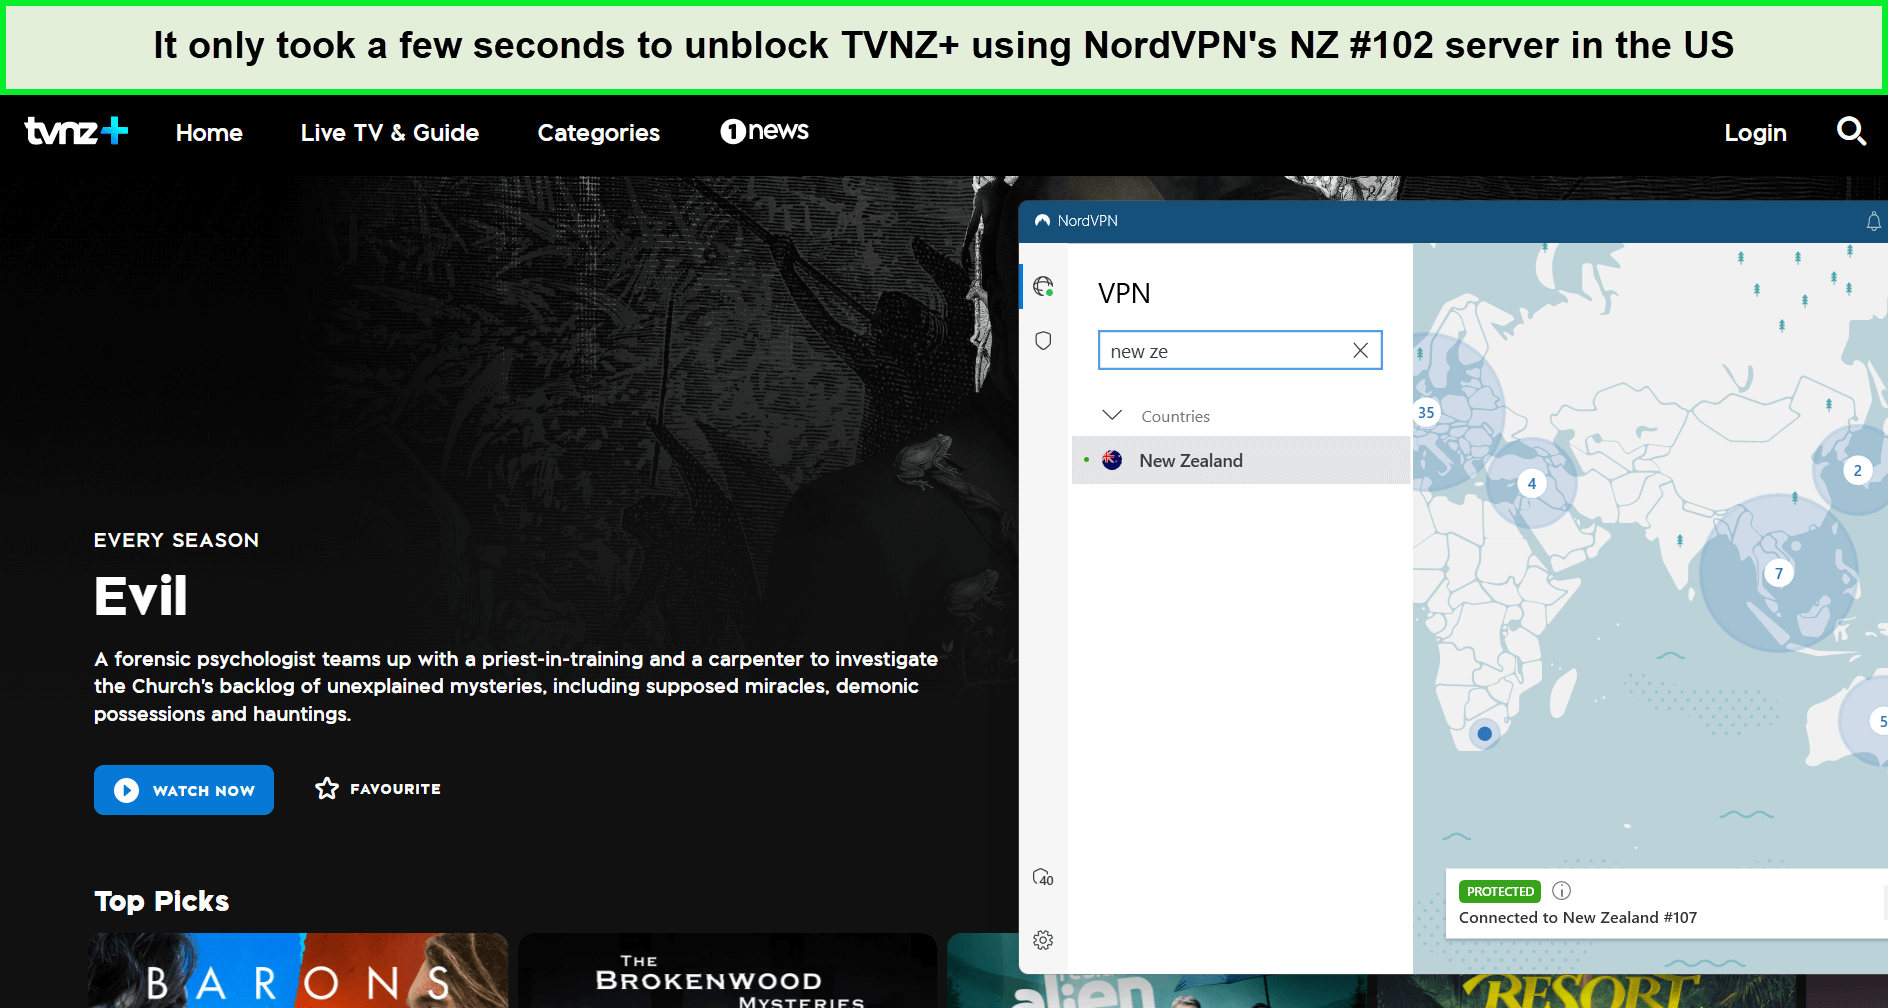  NordVPN-TVNZ entblockt in - Deutschland 